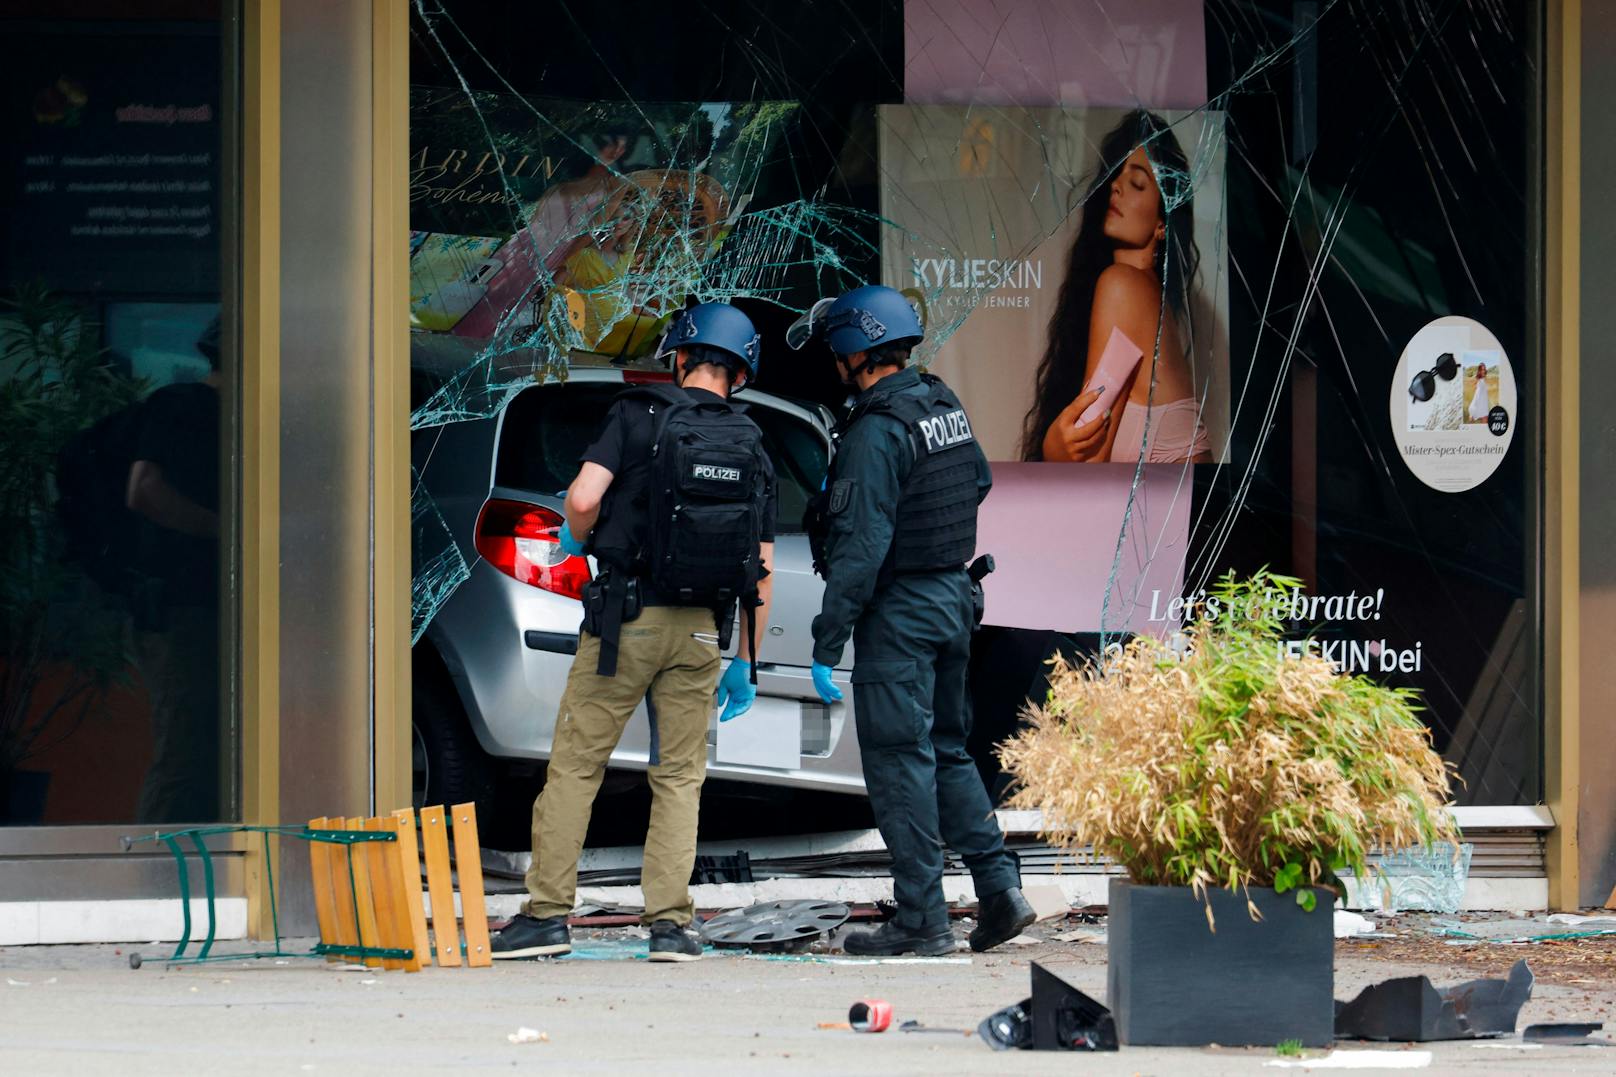 Am 8. Juni 2022 raste ein Auto in der Berliner Innenstadt in eine Menschenmenge. Es gibt mindestens ein Todesopfer und insgesamt acht teils schwerst Verletzte.